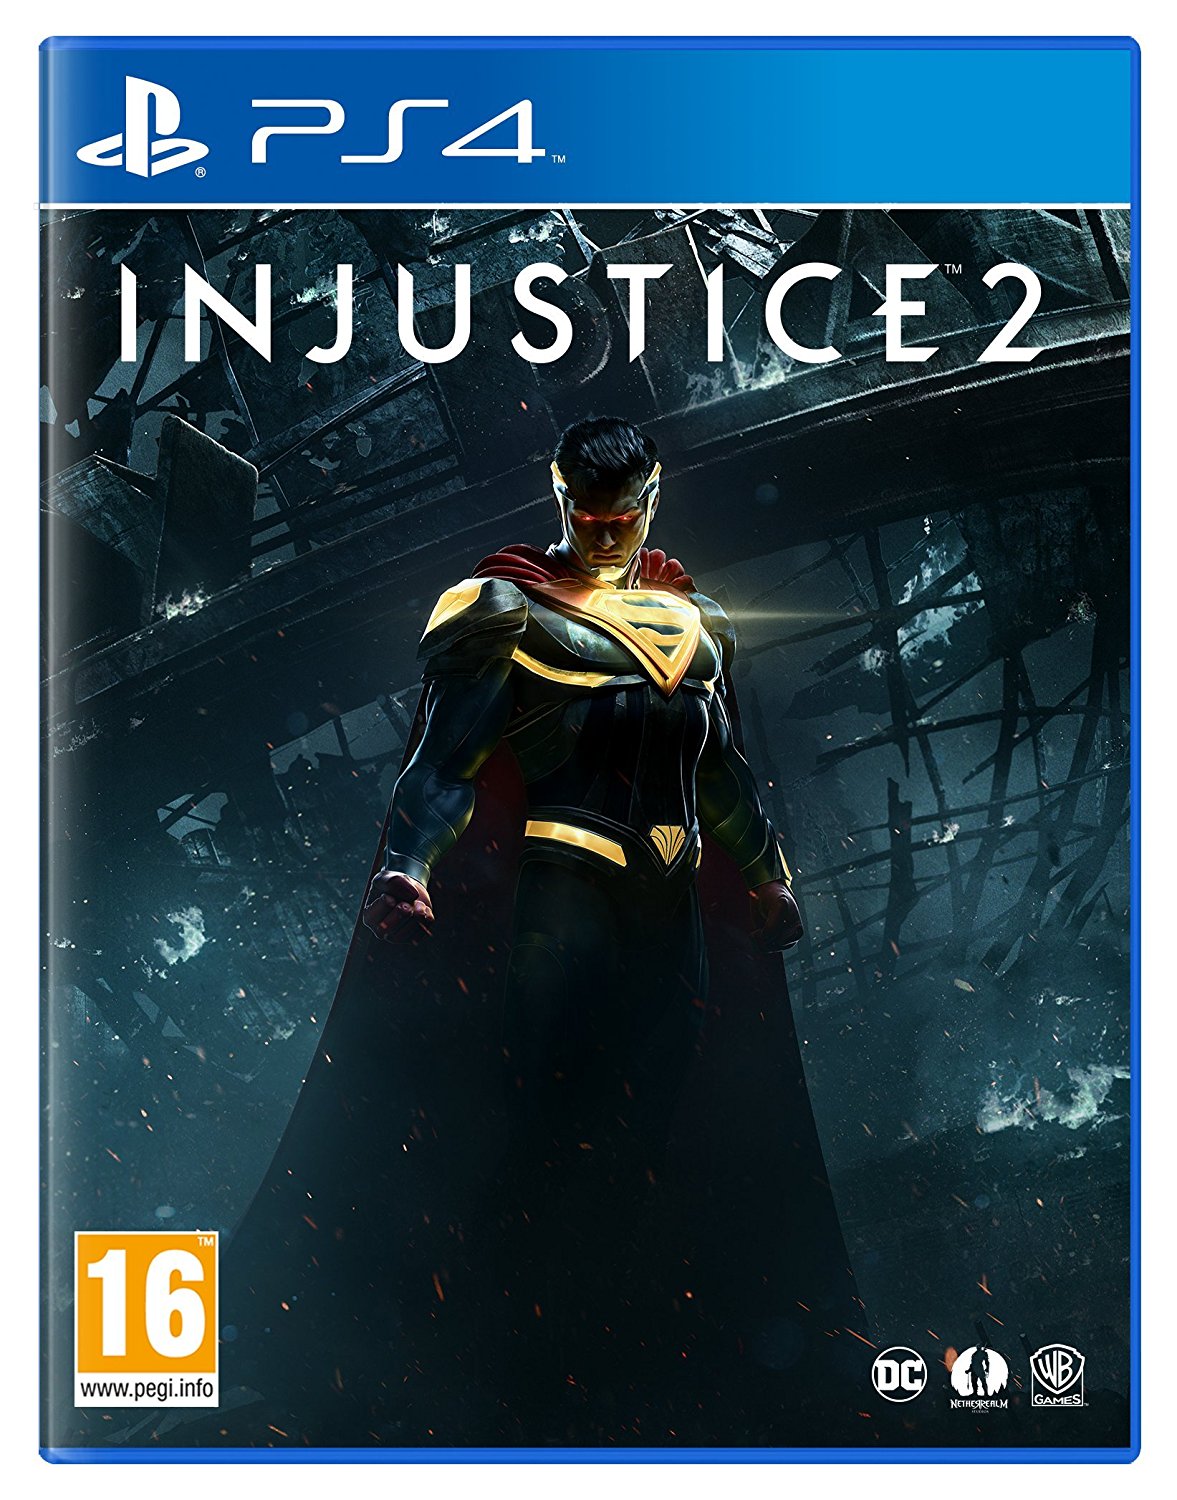 PS4: PS4 mäng Injustice 2